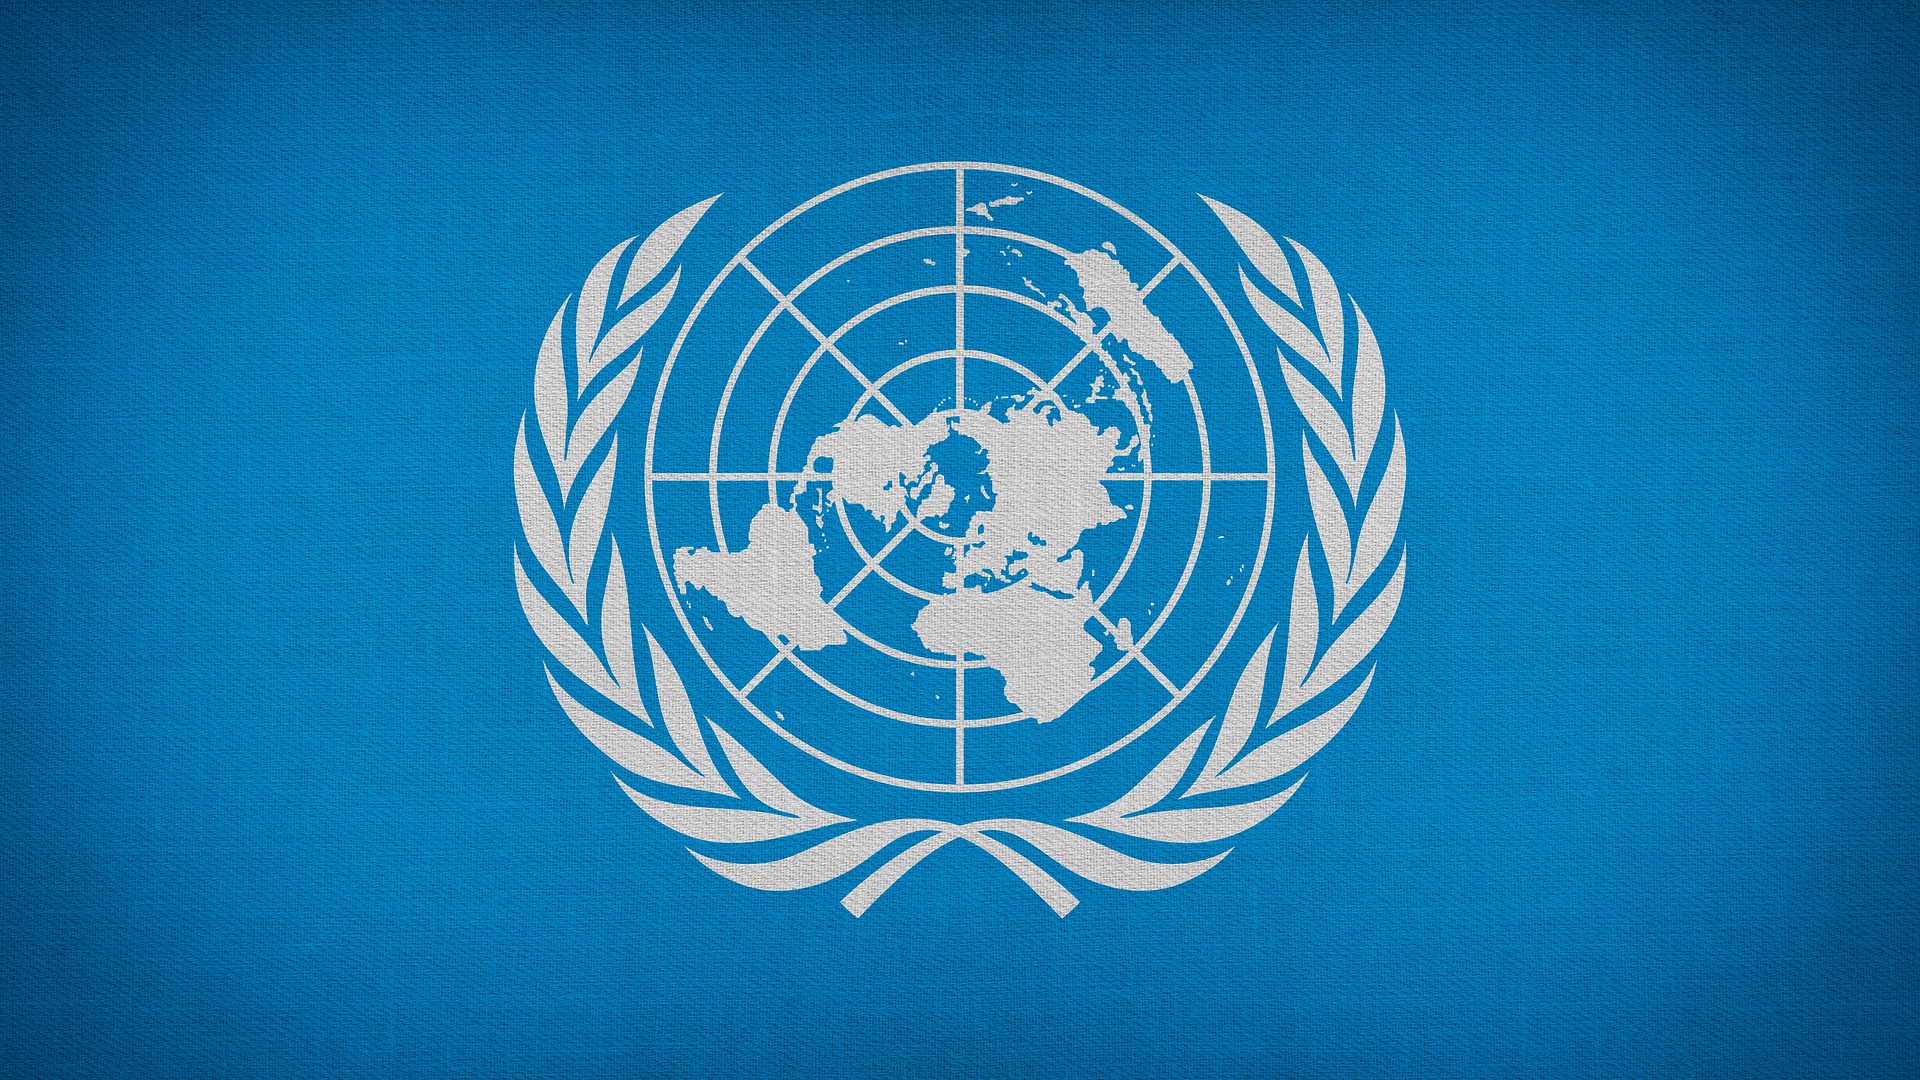 Flagge der UN. Quelle: pixabay